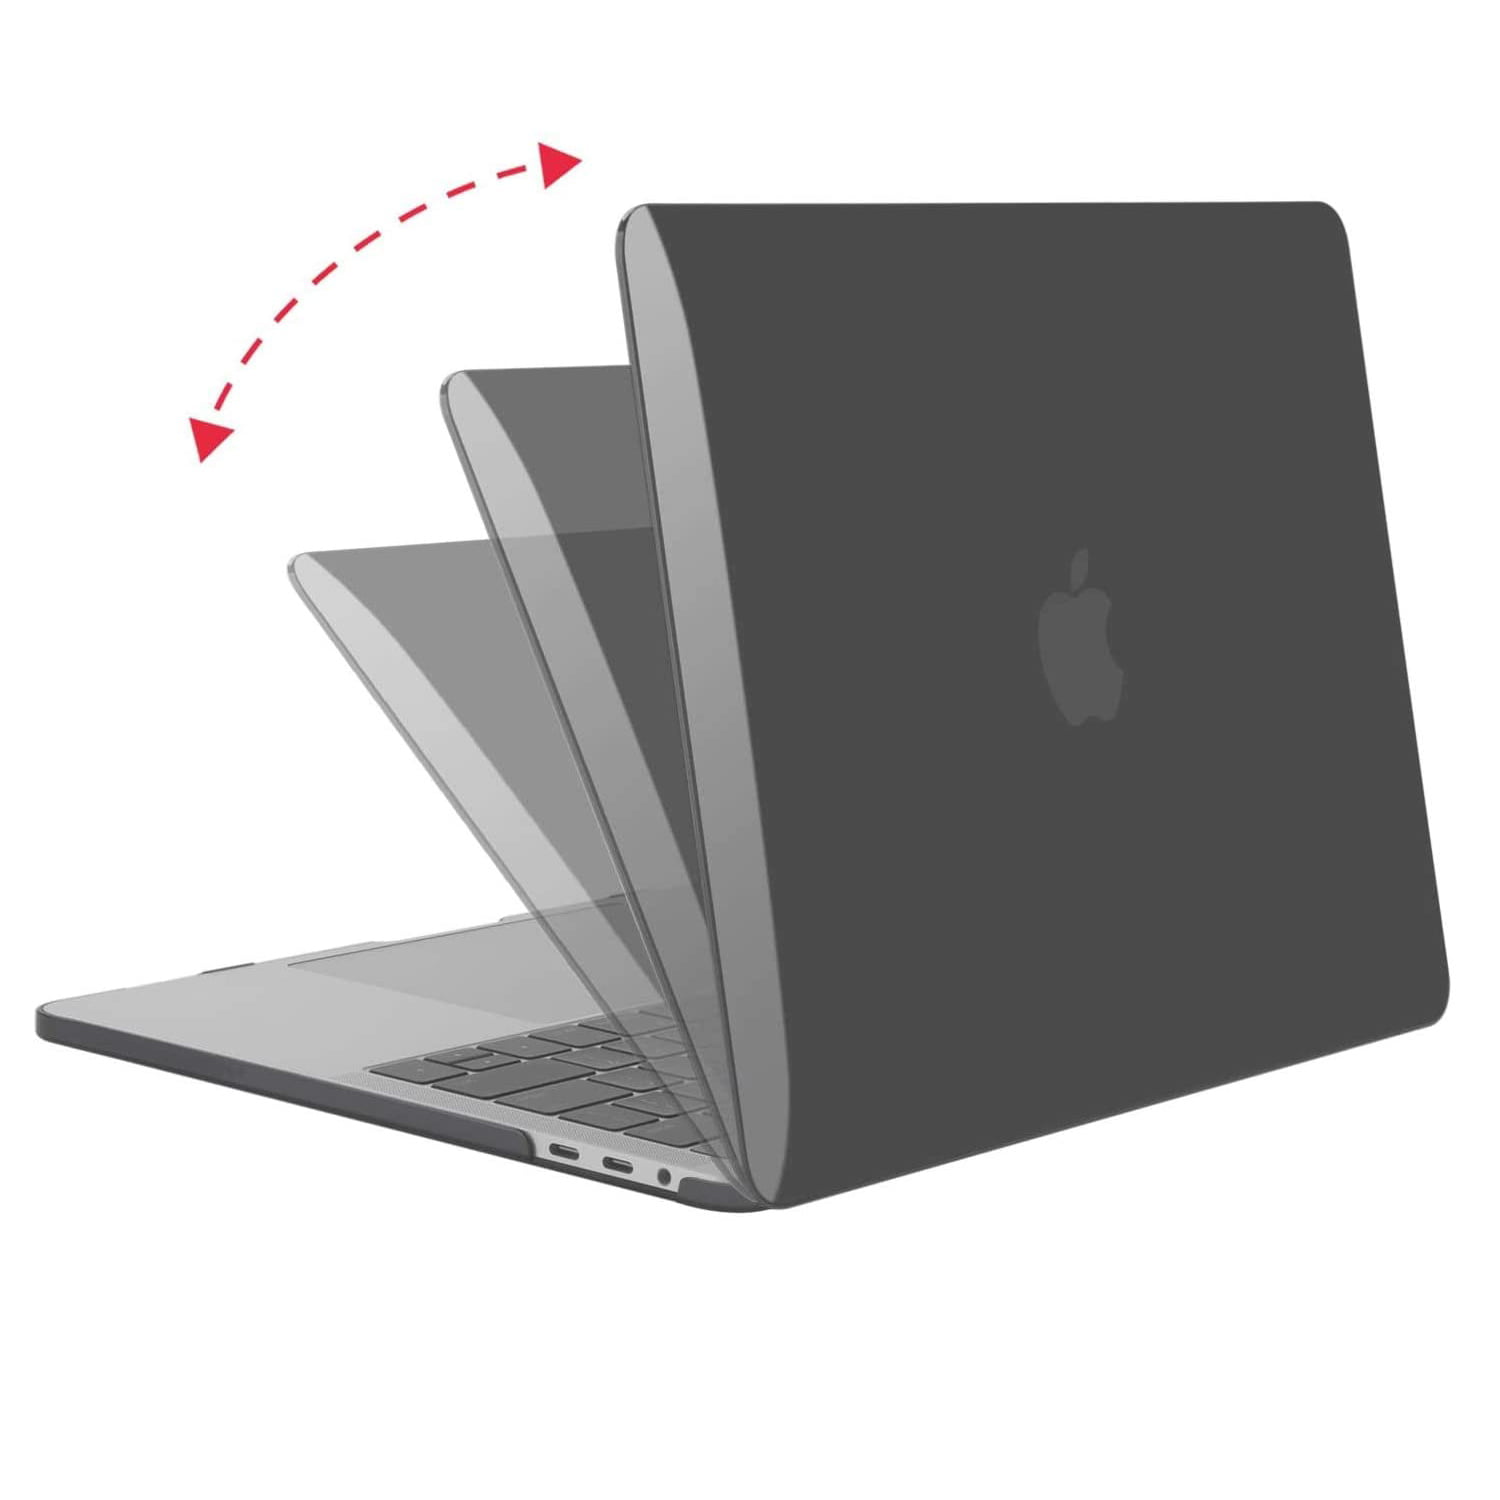 MOSISO Coque Compatible avec MacBook Pro 13 Pouces A2159 A1989 A1706 A1708 2019-2016 Coque Rigide Motifs Compatible avec MacBook Pro 13 Pouces avec/sans Touch Bar&ID Chat Mignon de Dessin Animé 